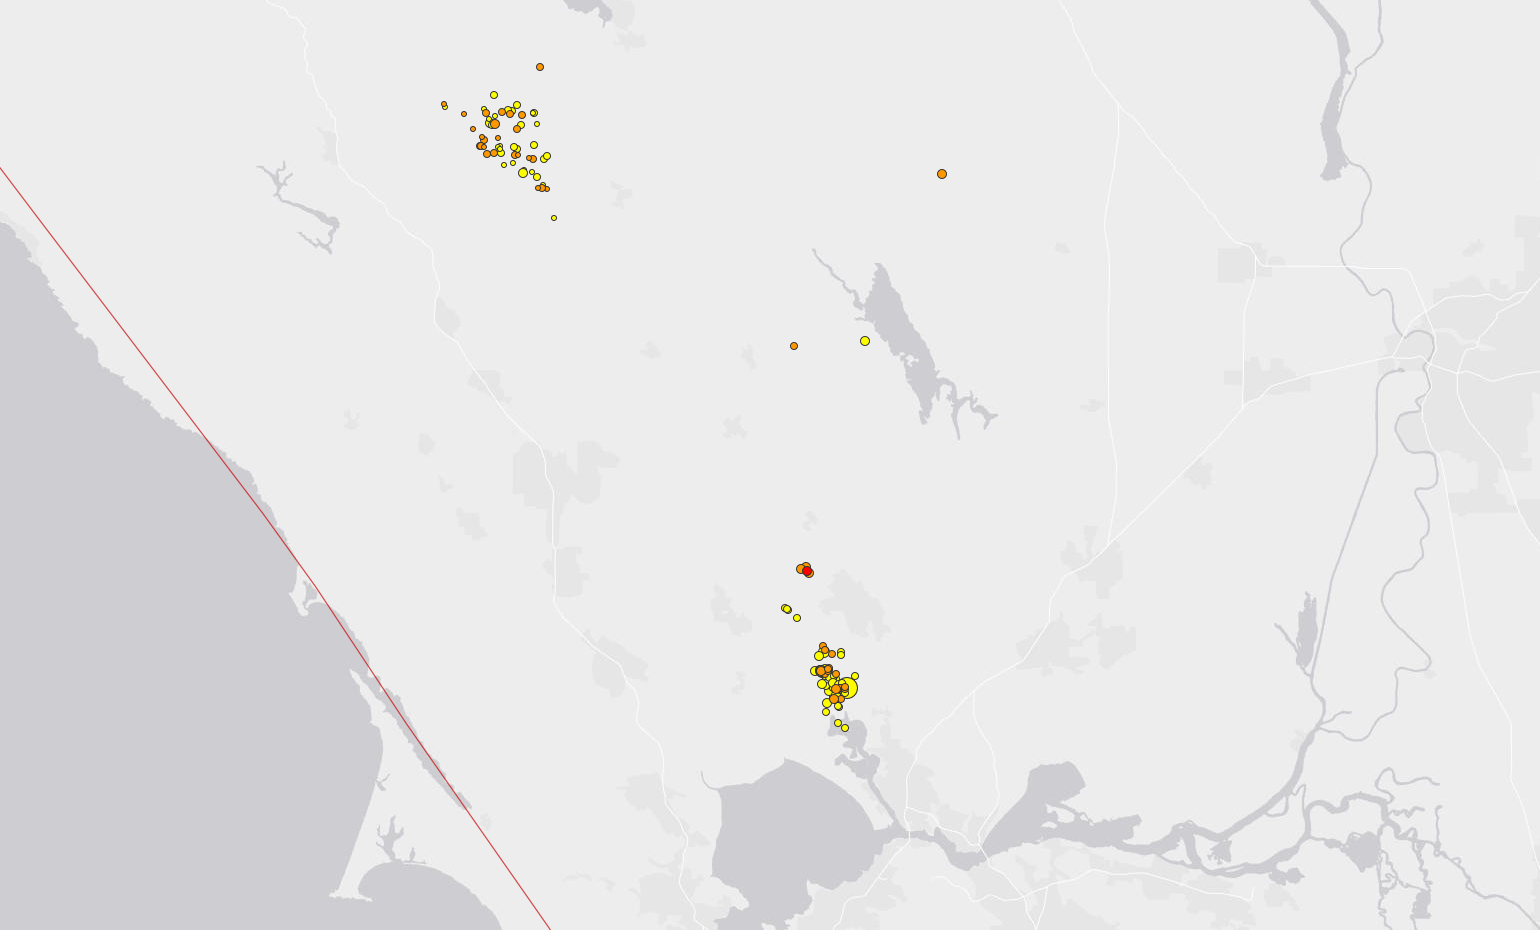 quake map aug 25 2014 napa